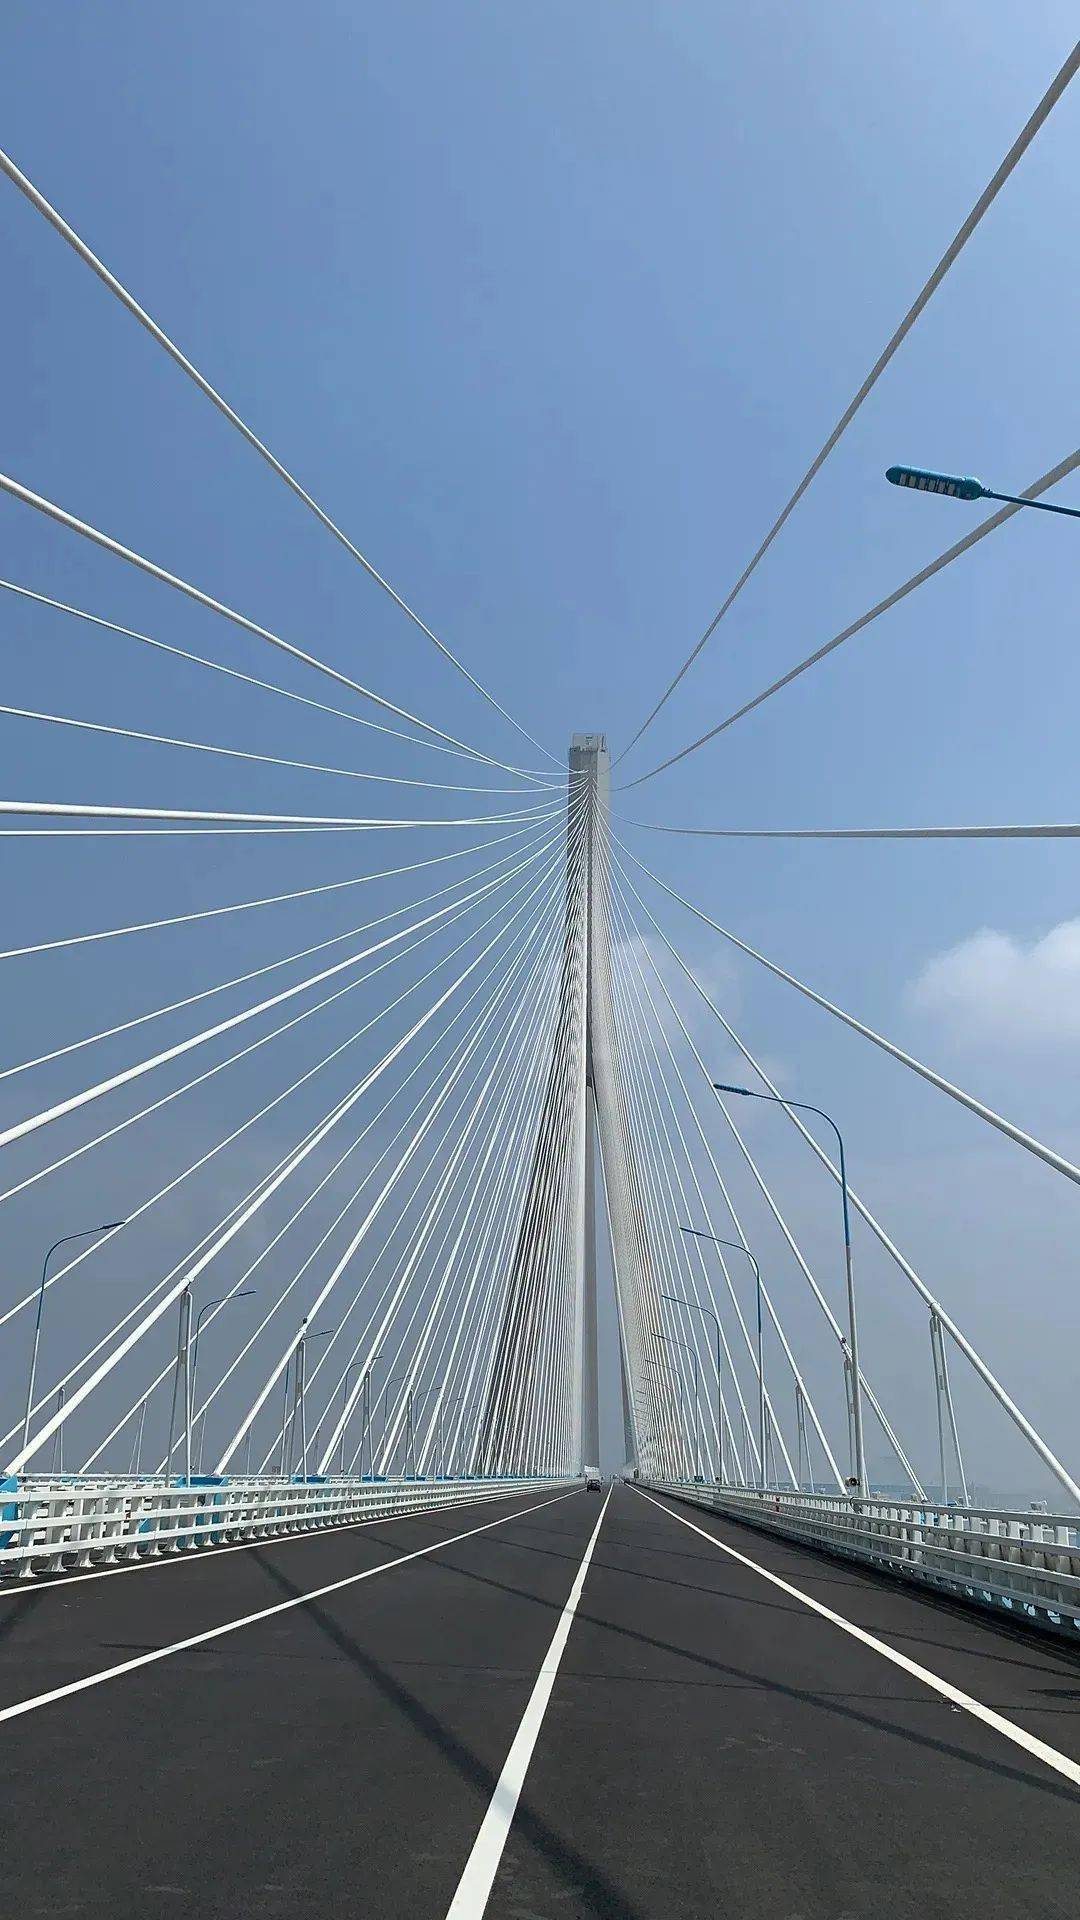 苏通大桥是中国高速公路网中的沿海大通道沈海高速g15跨越长江的过江